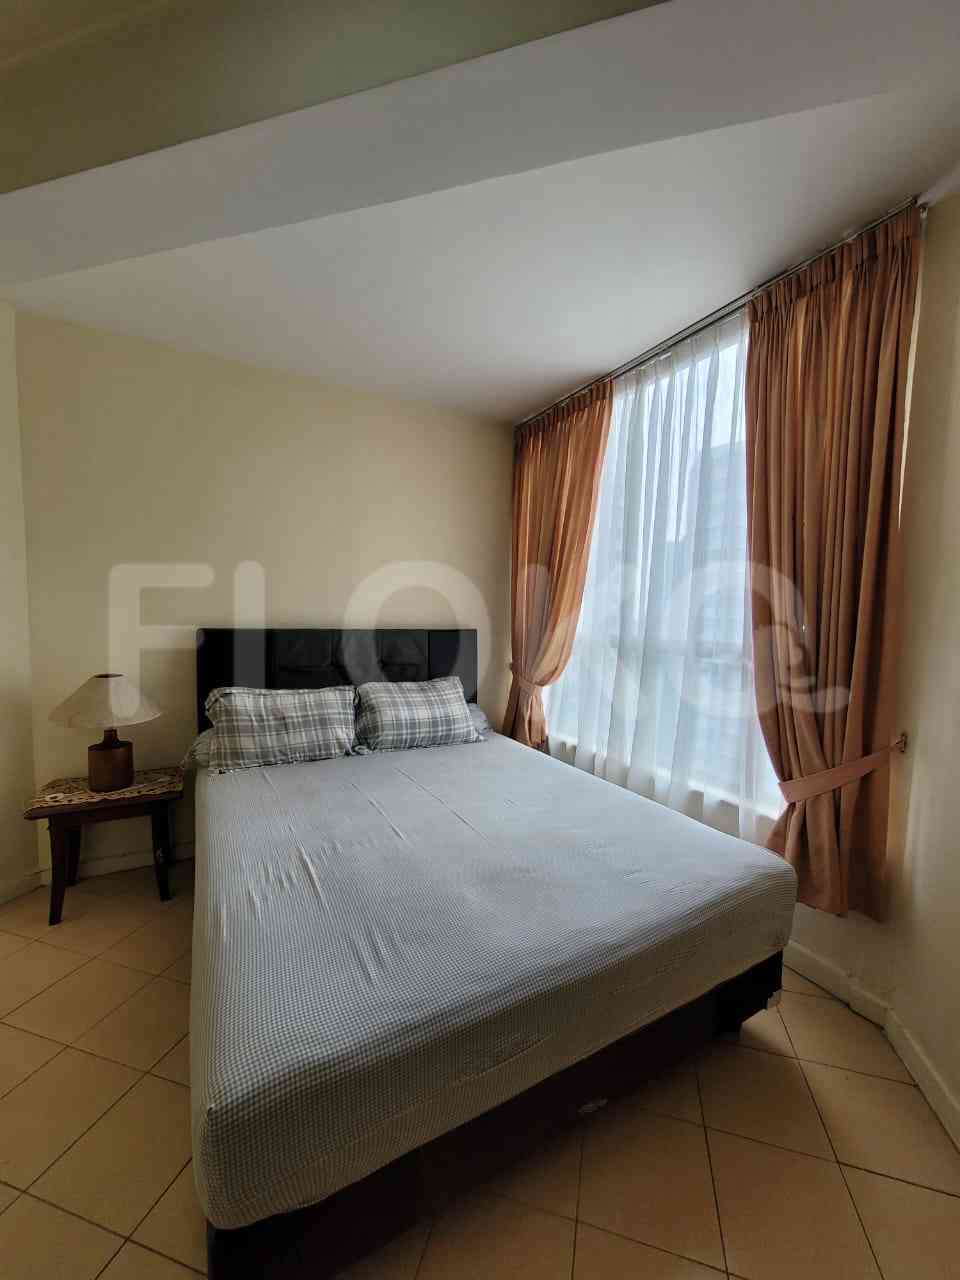 2 Bedroom on 23rd Floor for Rent in Taman Rasuna Apartment - fku9de 7